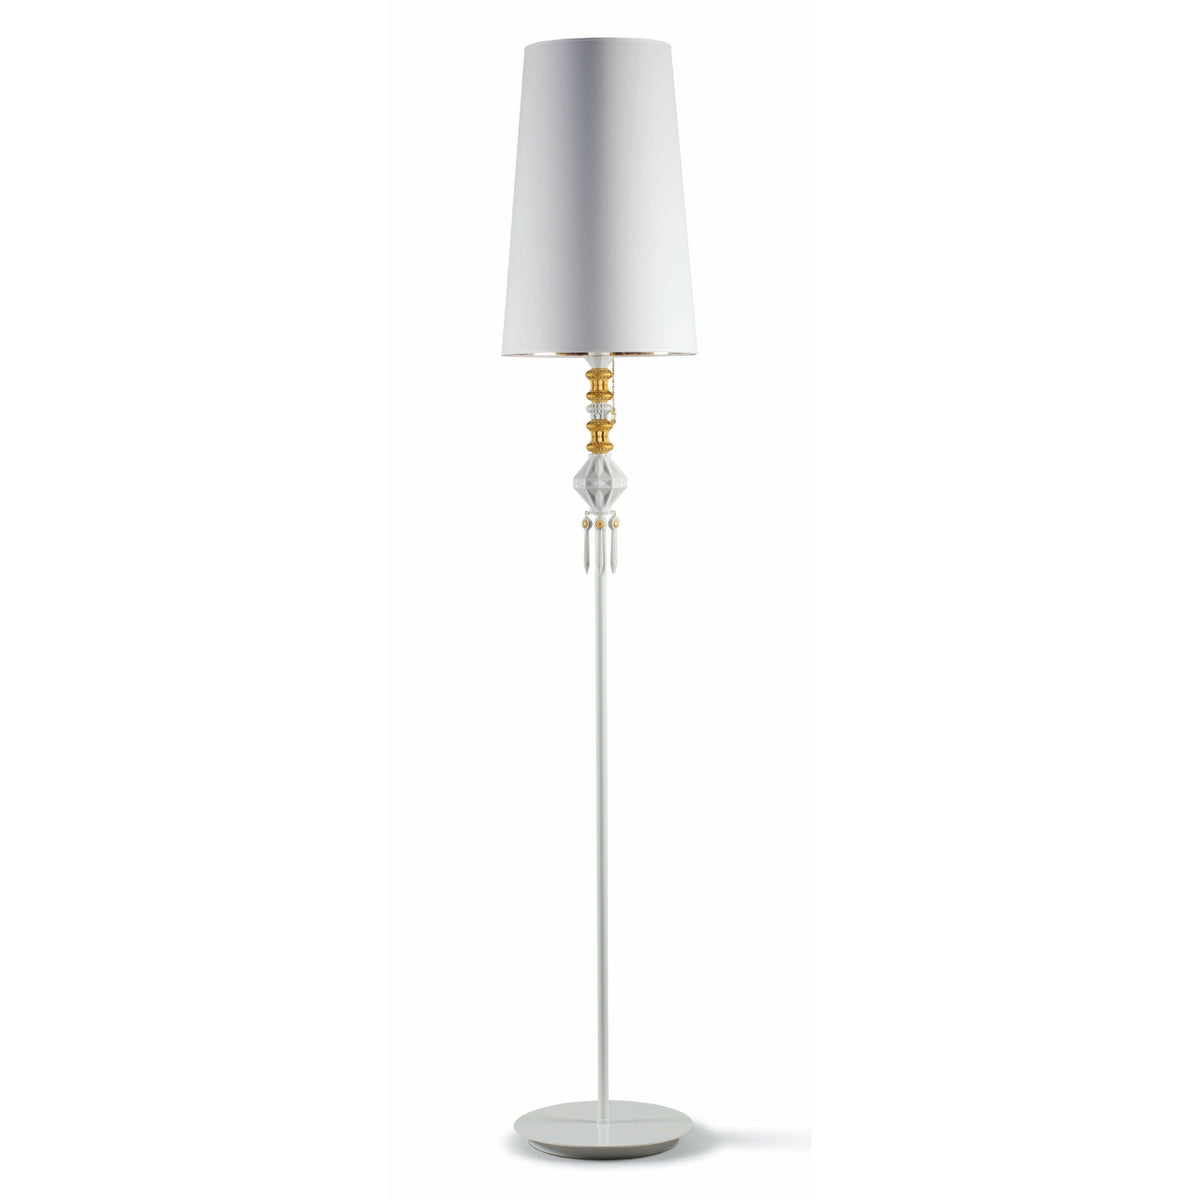 Lladro - Belle de Nuit Floor Lamp I - 01023456 | Montreal Lighting & Hardware